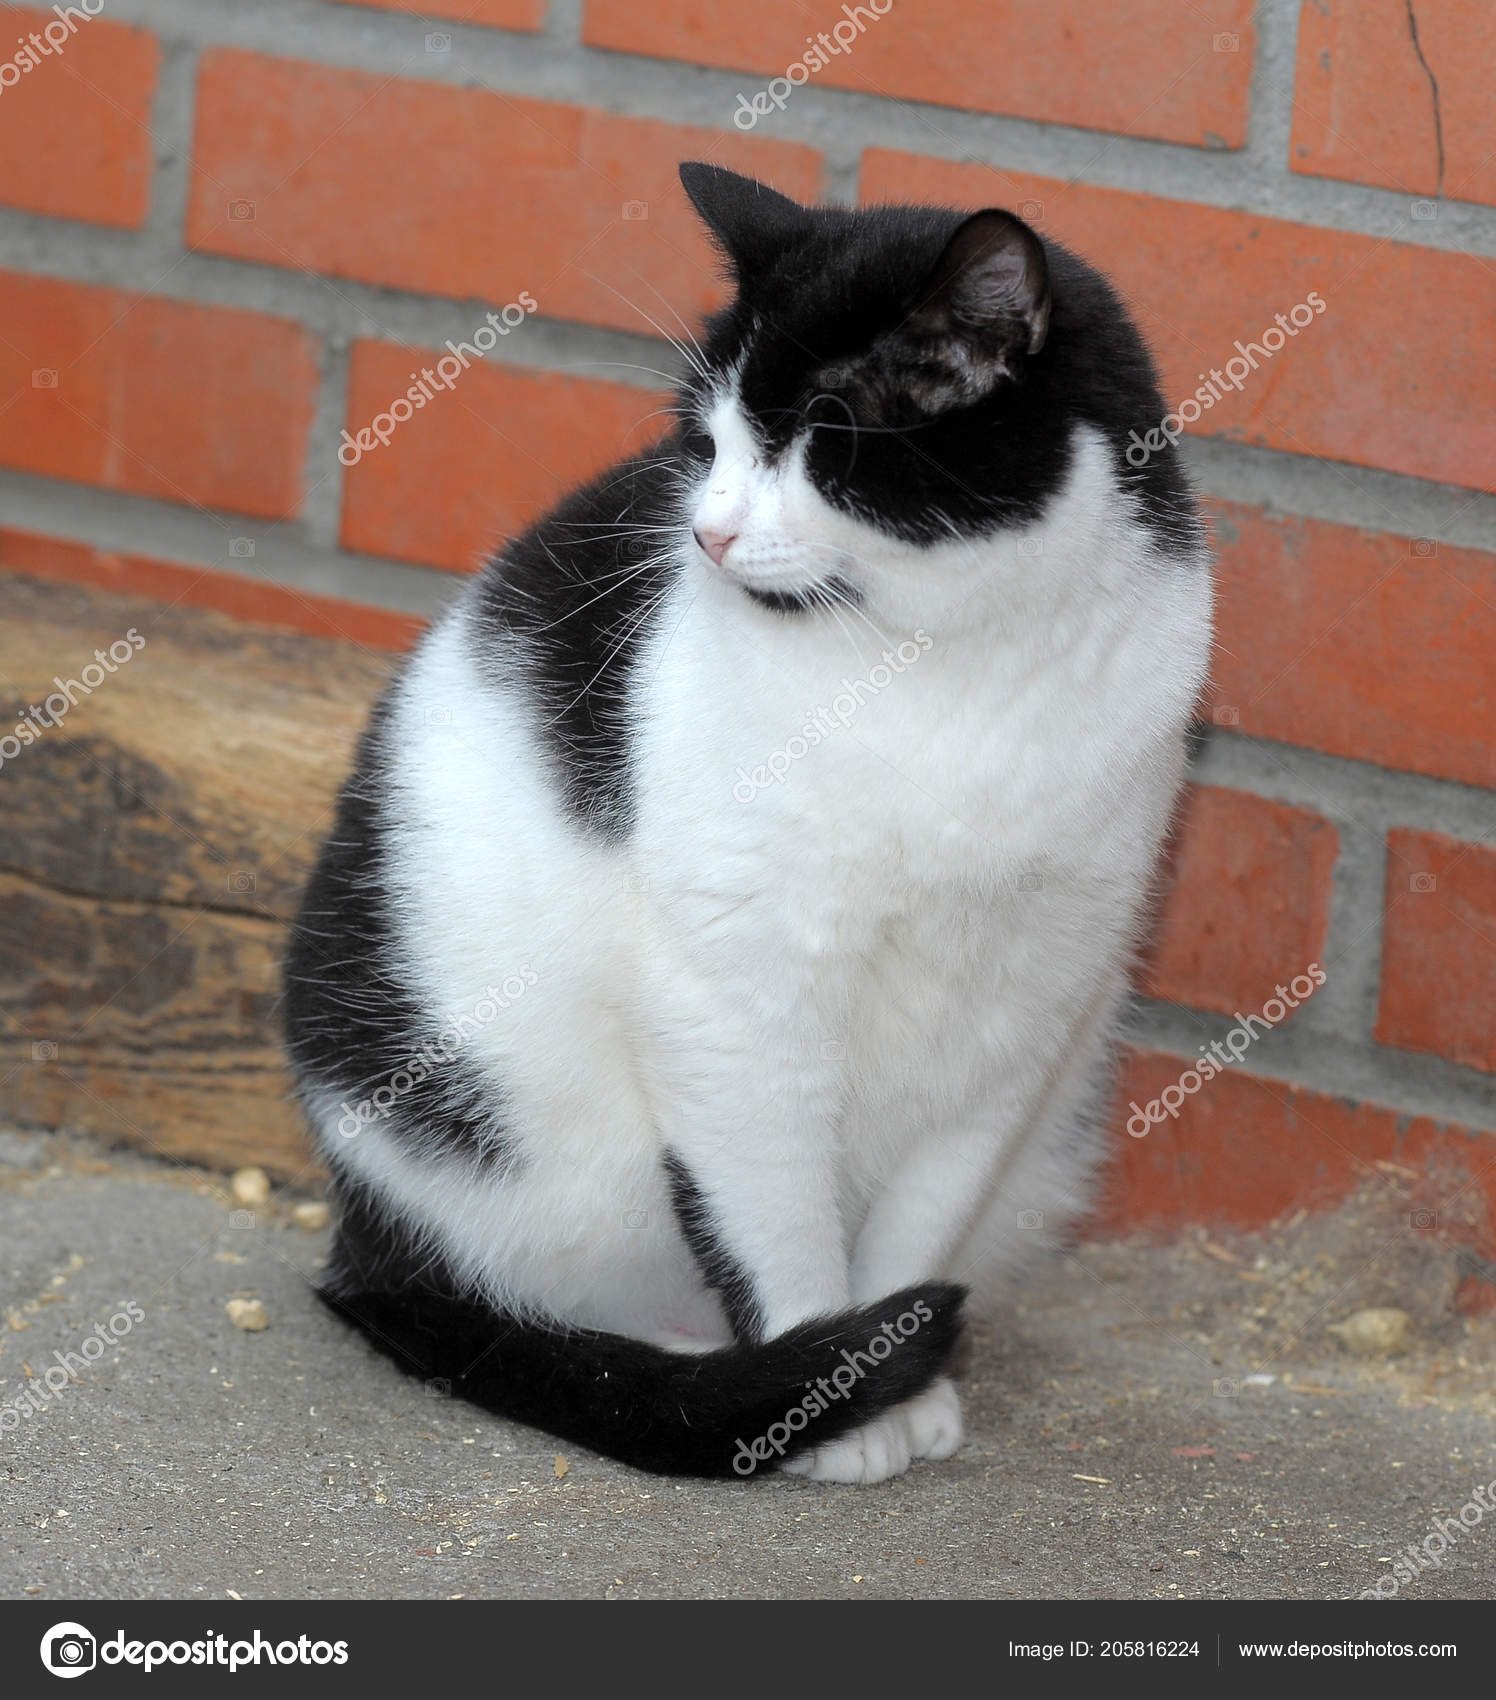 hubená černá chlupatá kočička